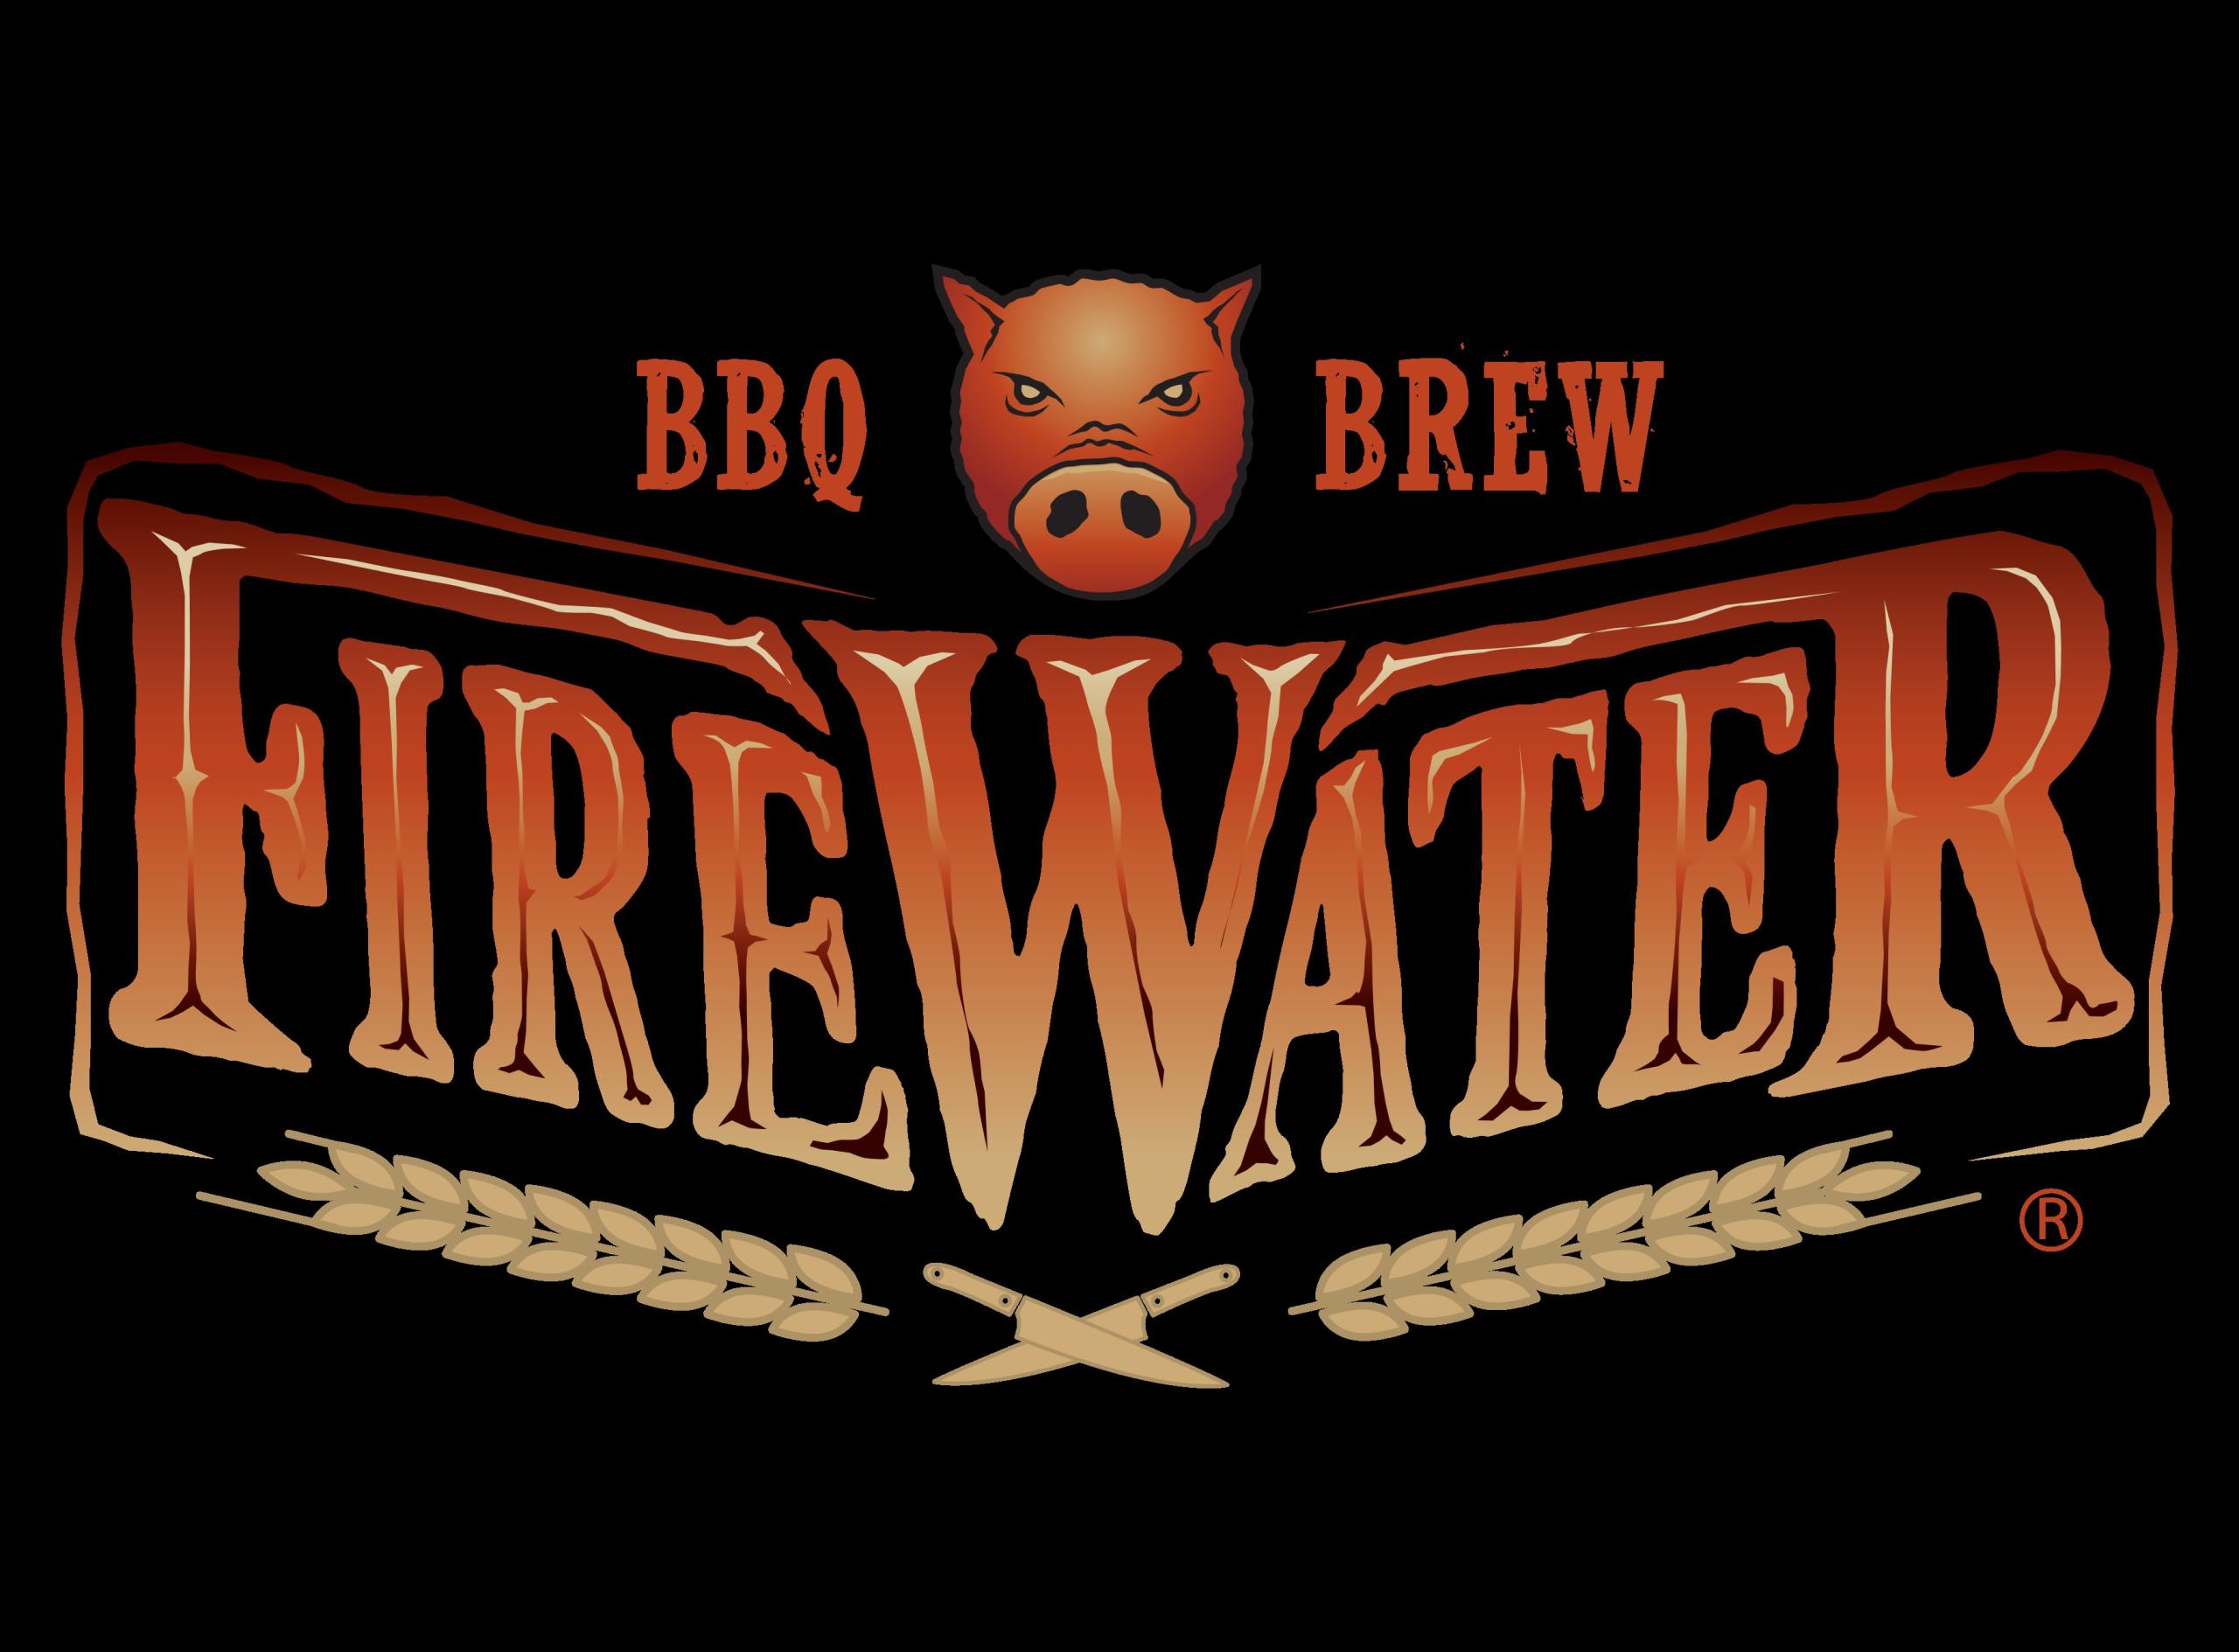 Firewater BBQ & Brew